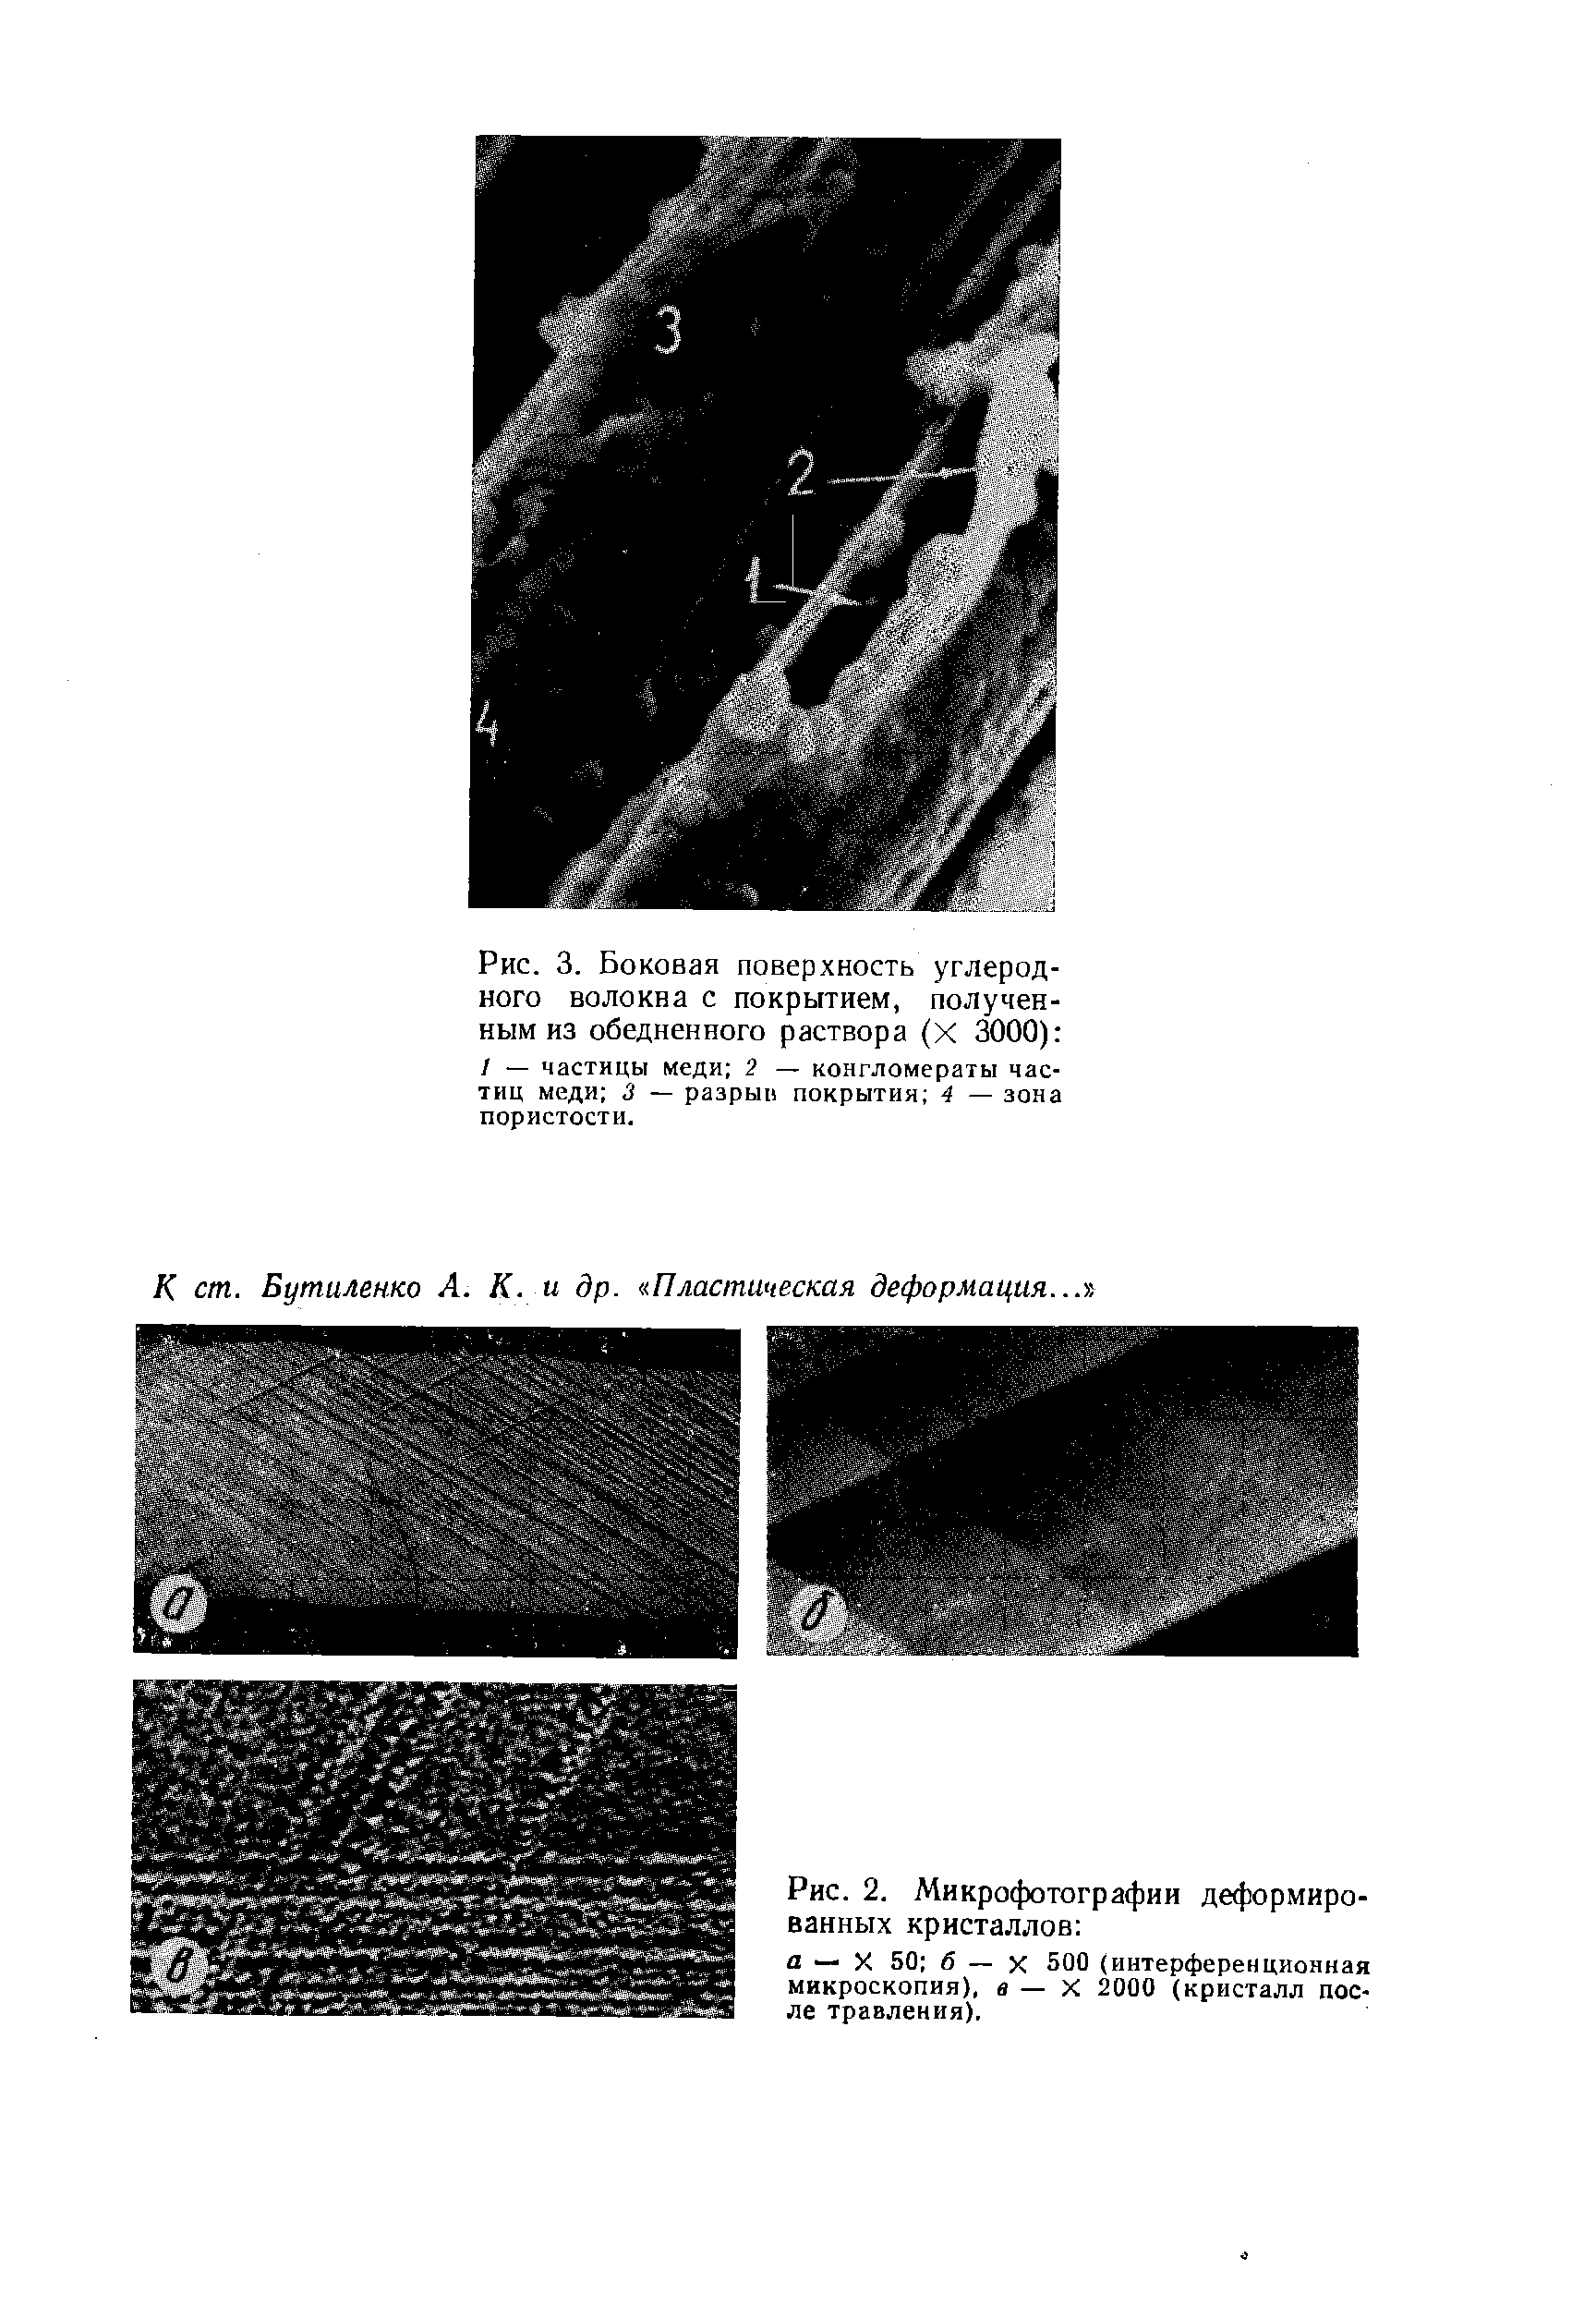 Рис. 2. Микрофотографии деформированных кристаллов а — X 50 б — X 500(<a href="/info/175639">интерференционная микроскопия</a>), в — X 2000 (кристалл после травления).
